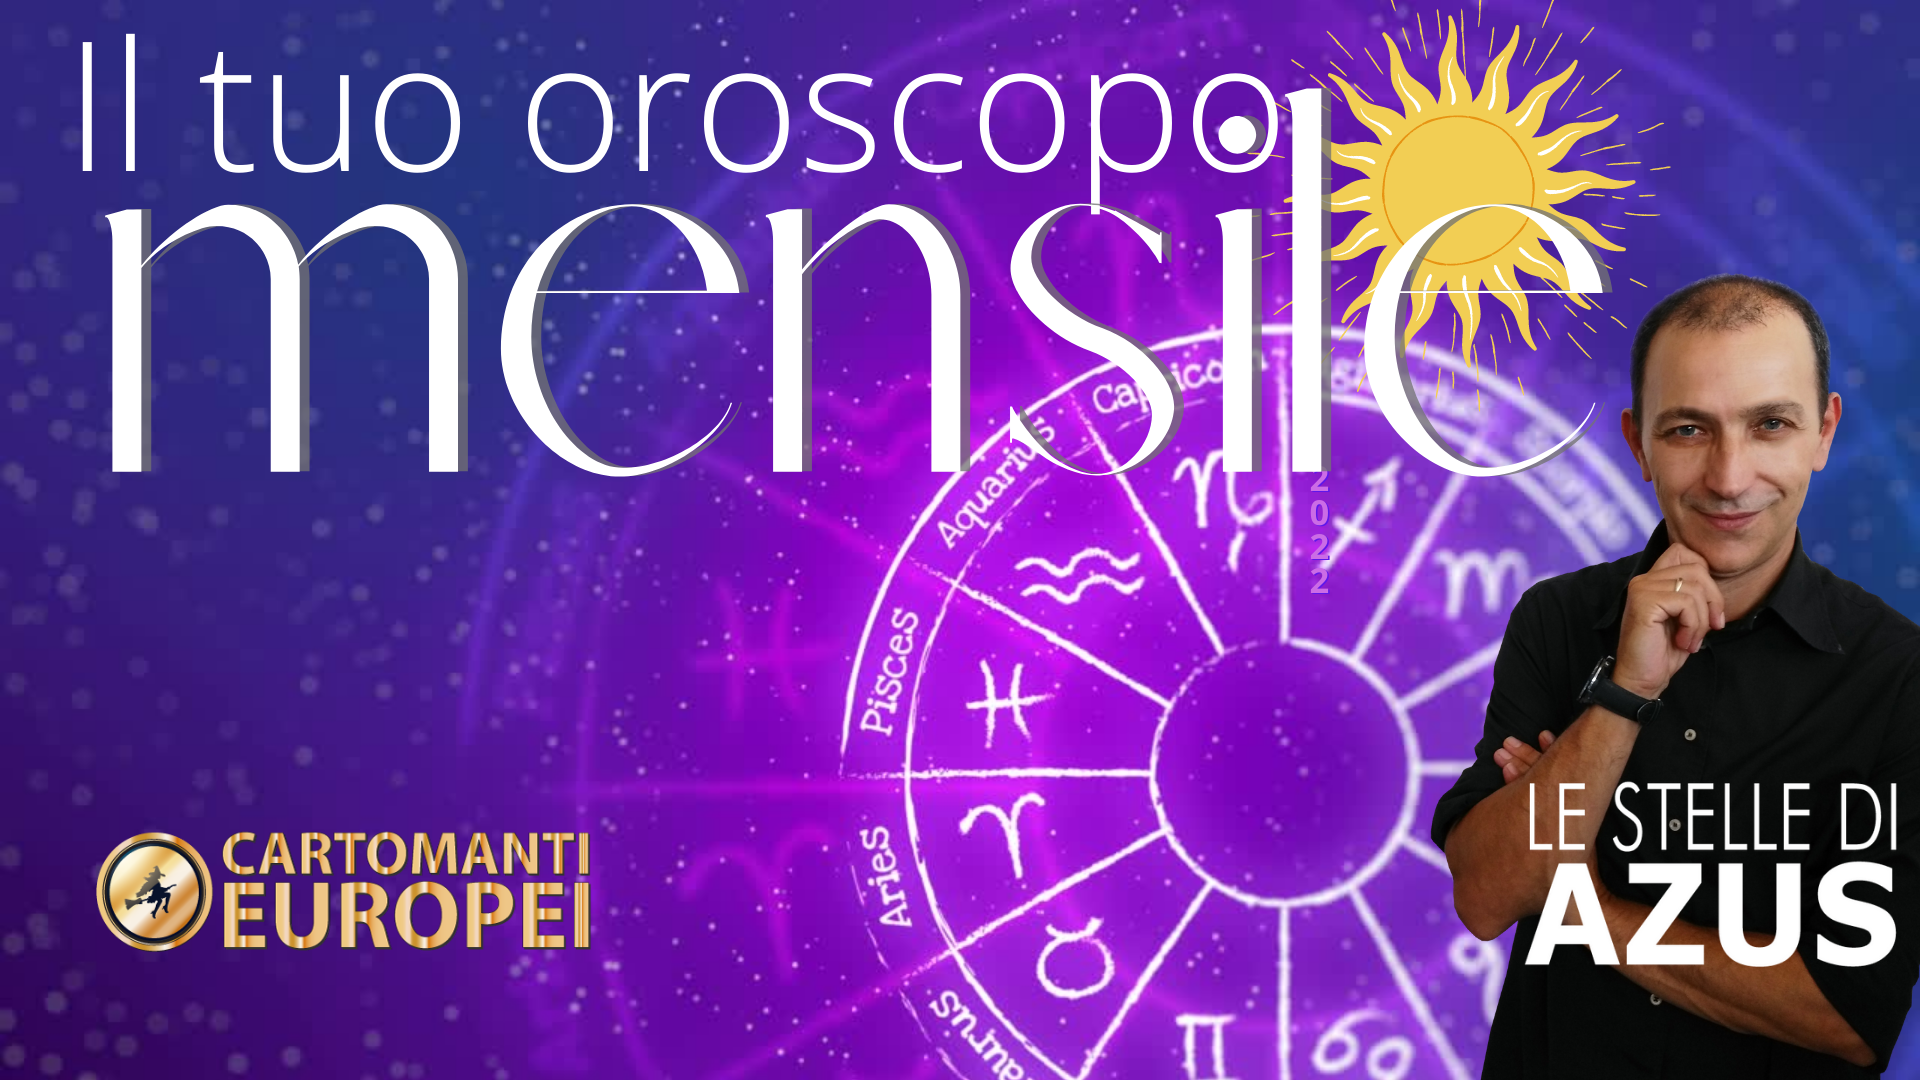 oroscopo di Agosto 2022 a cura dell'astrologo Azus